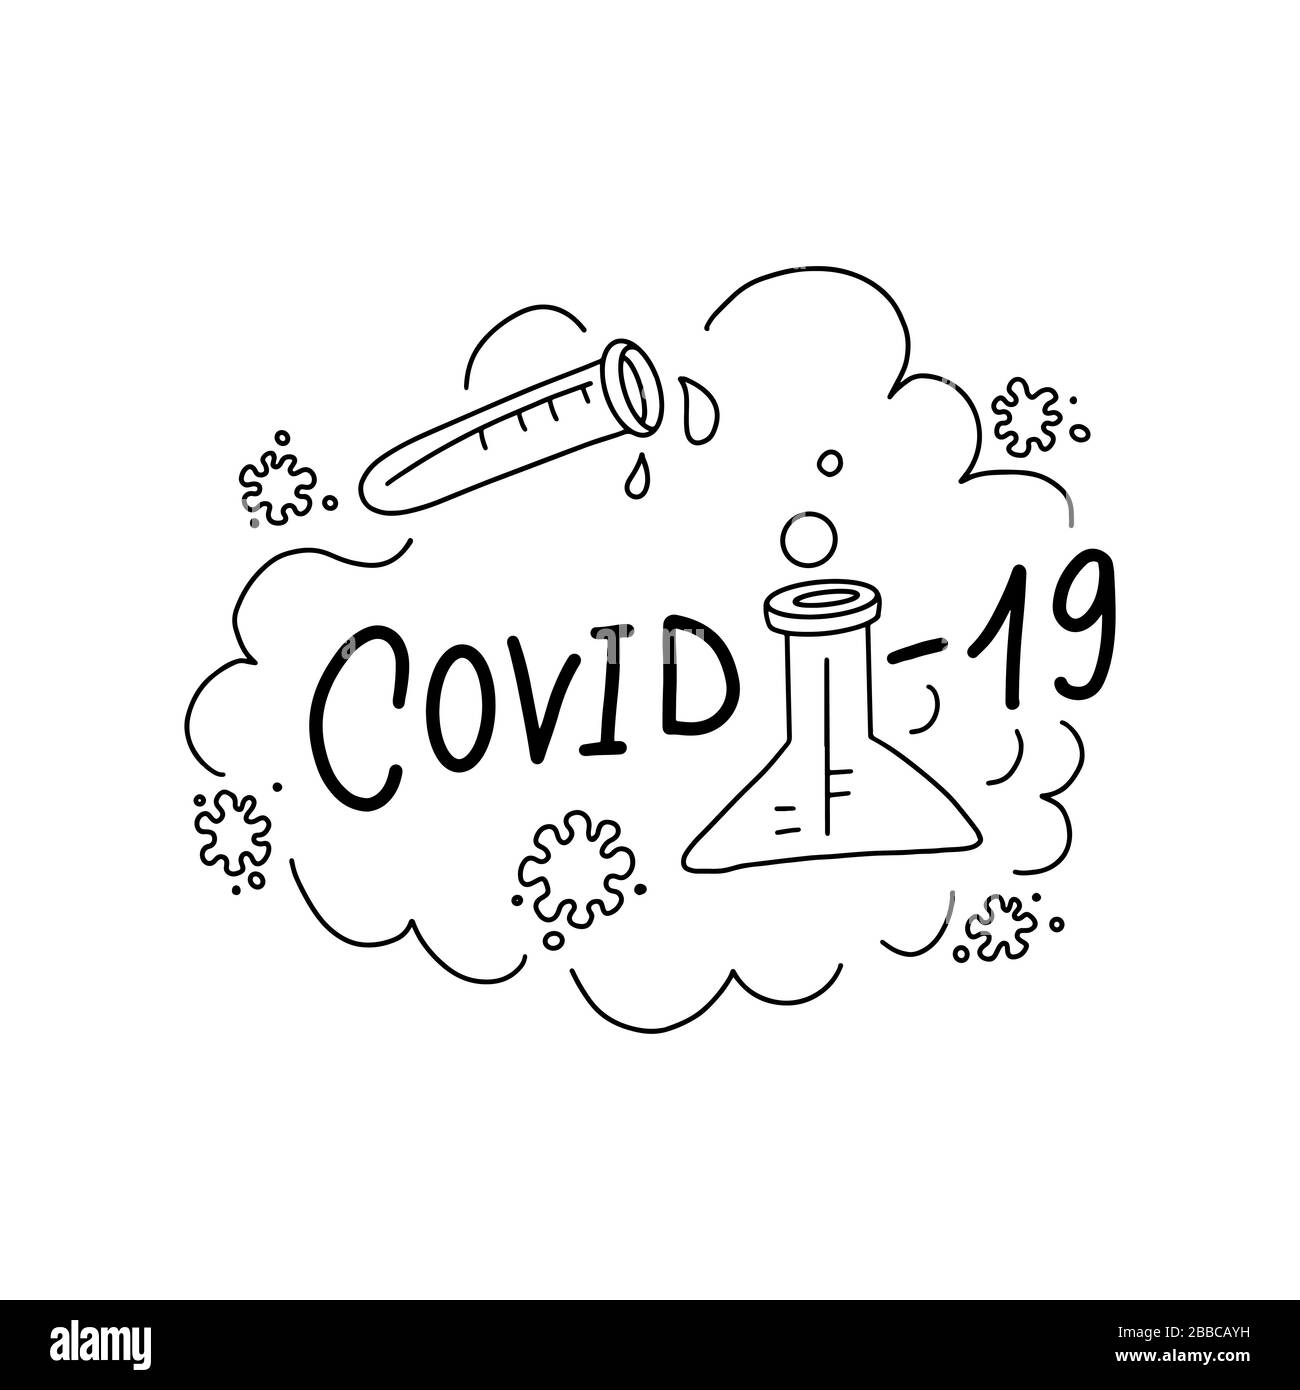 Illustrazione vettoriale di Covid-19. Concetto grafico di coronavirus pandemico. Testo della scritta vettoriale del virus Covid-19. 2019-nCoV. Laboratorio medico, concetto di protezione. Illustrazione Vettoriale